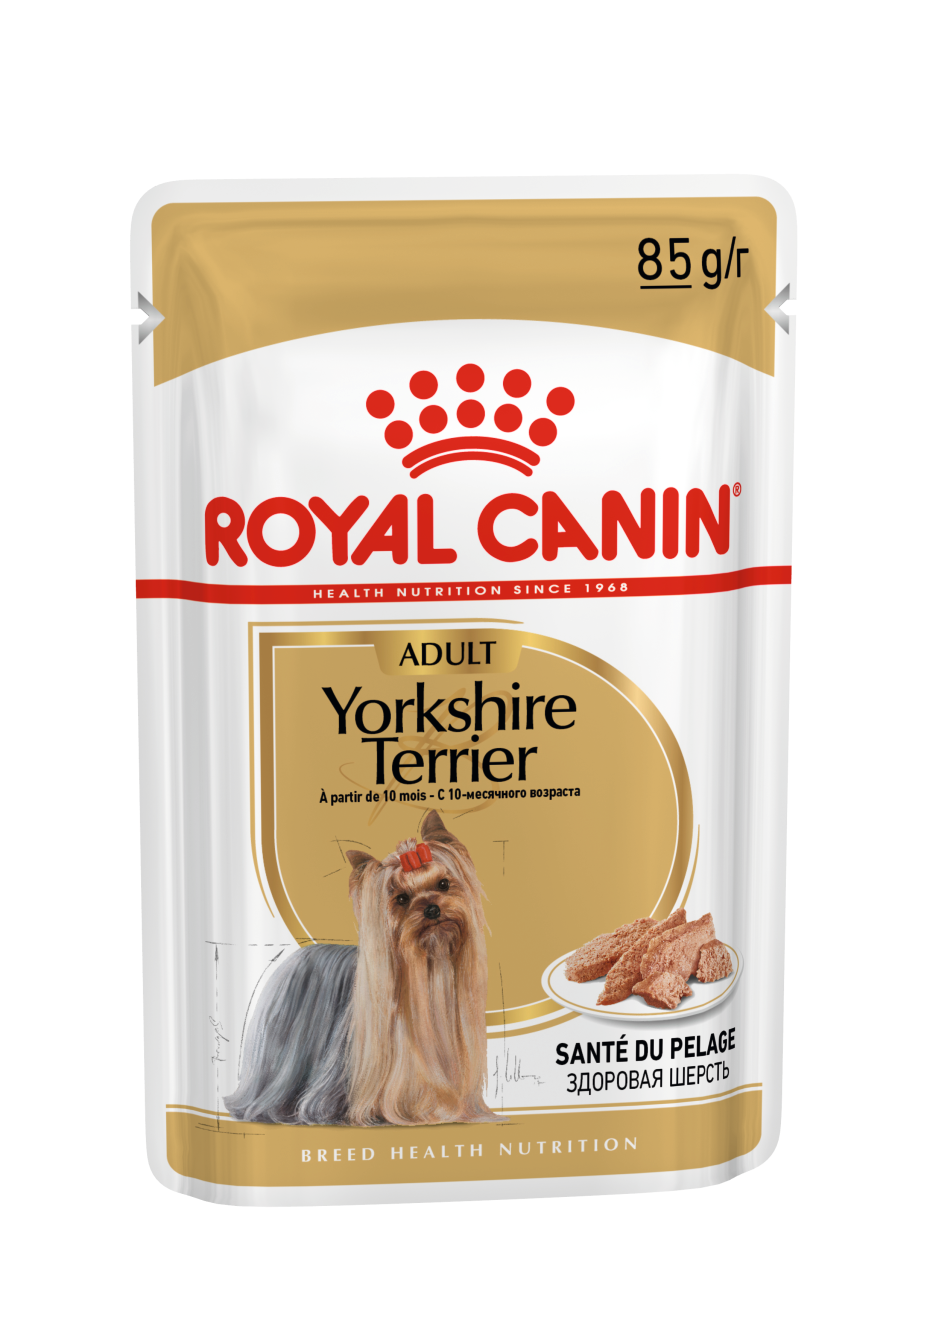 Royal Canin Yorkshire Terrier Adult  - Aliment humid pour chien adulte et mature -À partir de 10 mois (mousse) - 12x85g